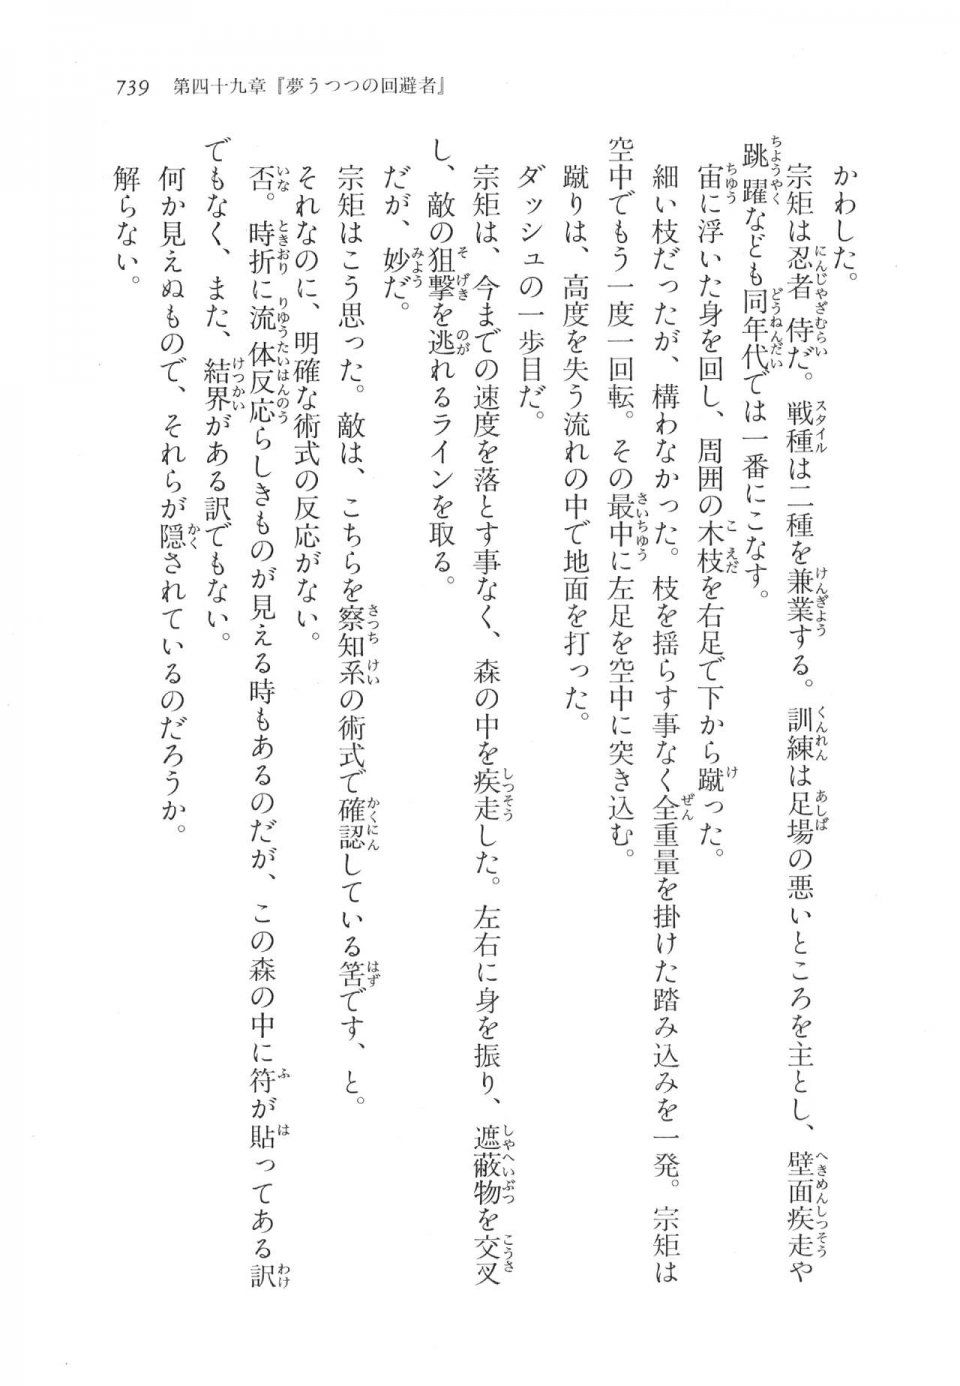 Kyoukai Senjou no Horizon LN Vol 17(7B) - Photo #741